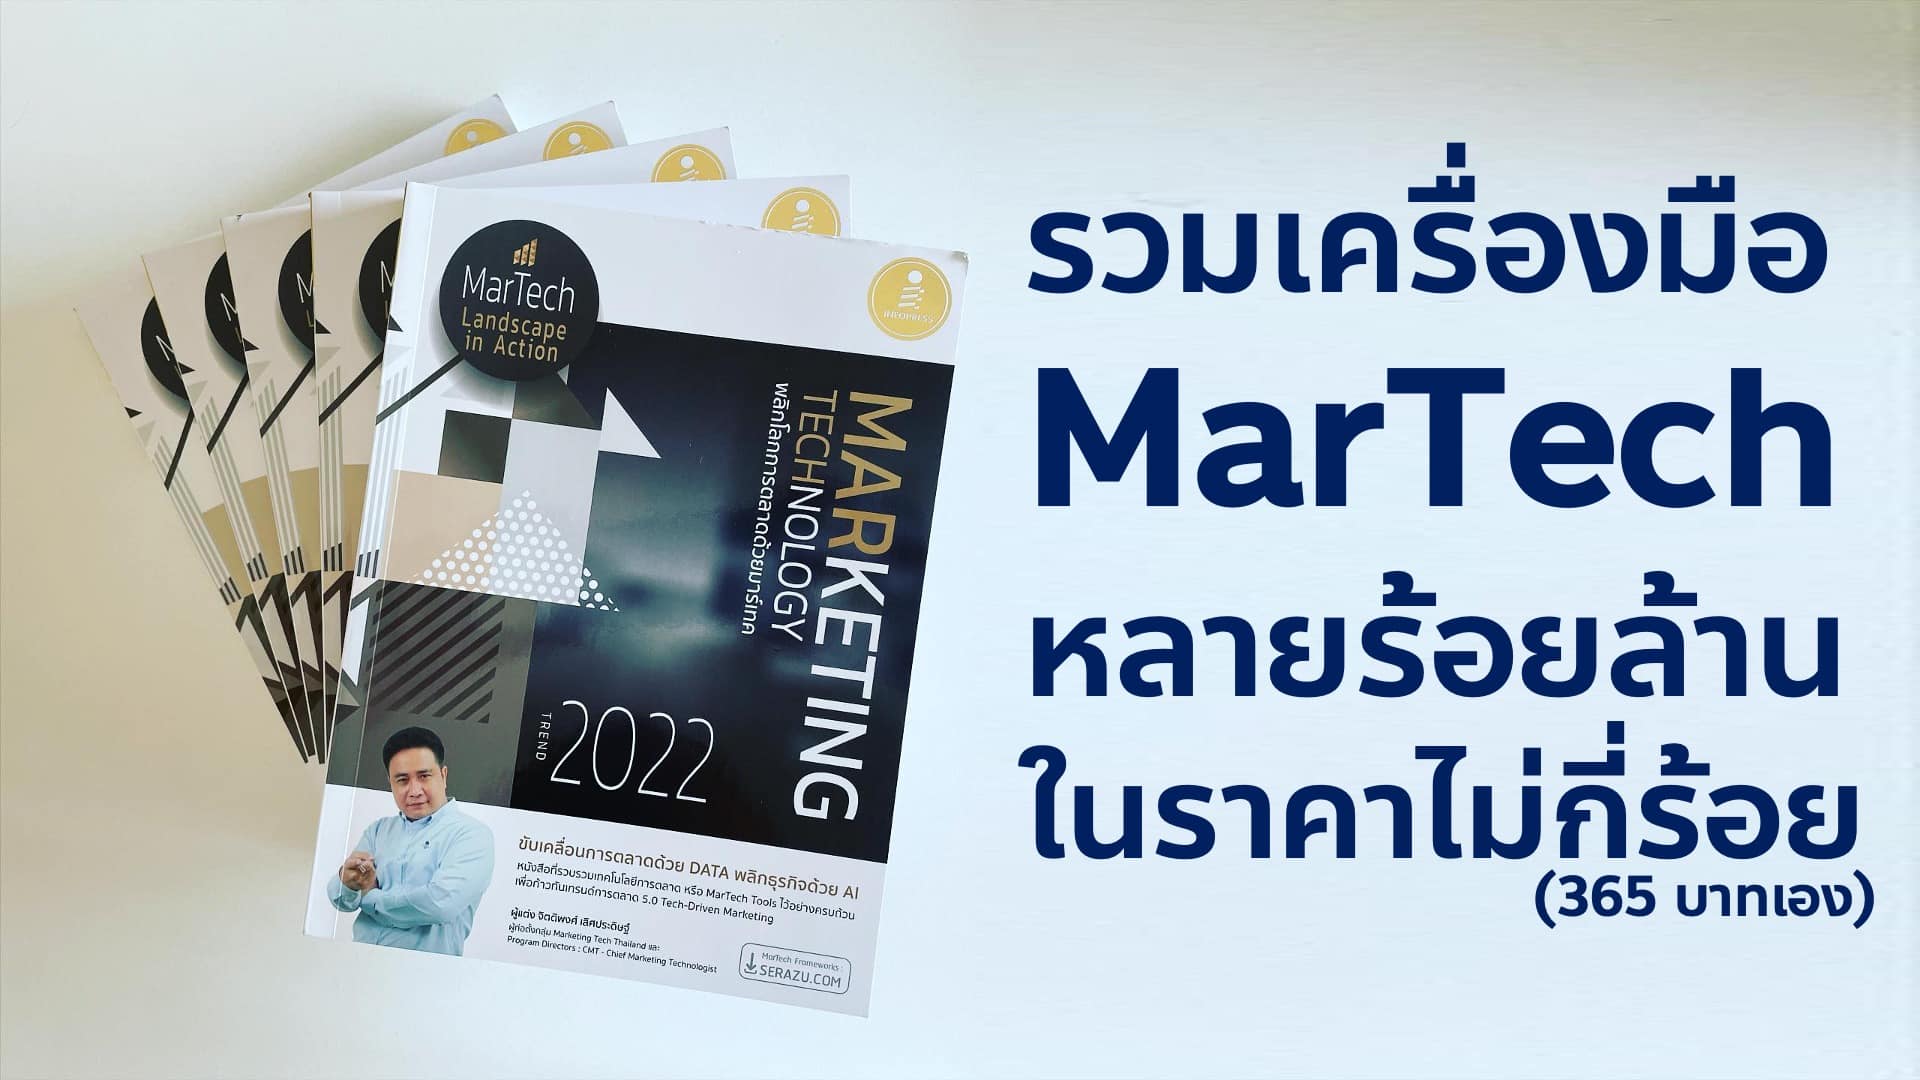 รีวิวหนังสือ Marketing Technology Trend 2022 สรุป MarTech ใหม่ในปีนี้